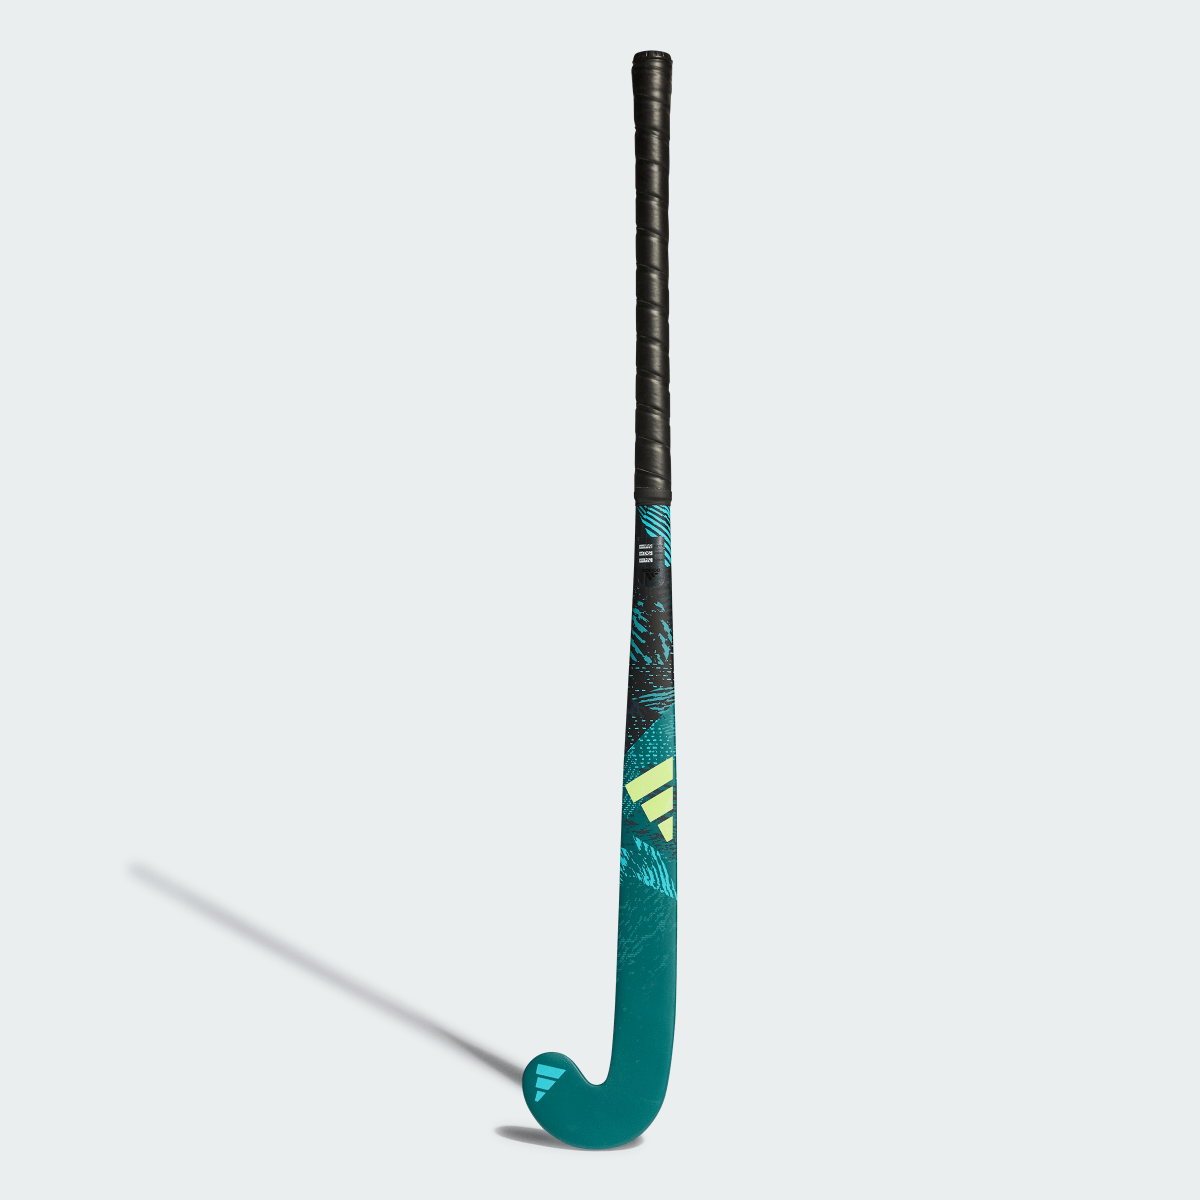 Adidas Stick de hockey hierba Youngstar.9 61 cm. 1